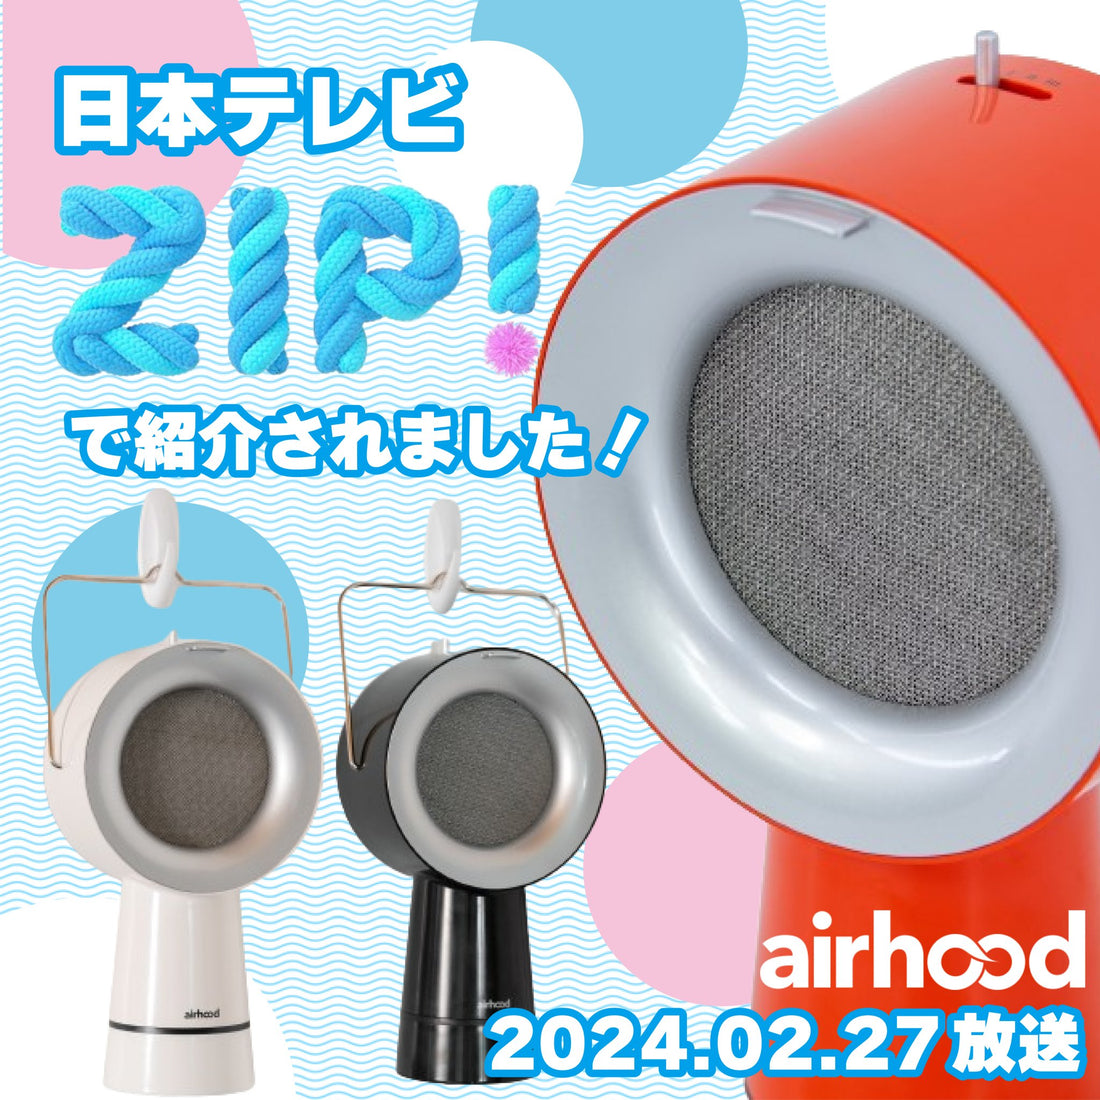 【メディア掲載】日本テレビ「ZIP!」でAirHoodが紹介されました - Airhood JAPAN公式ホームページ